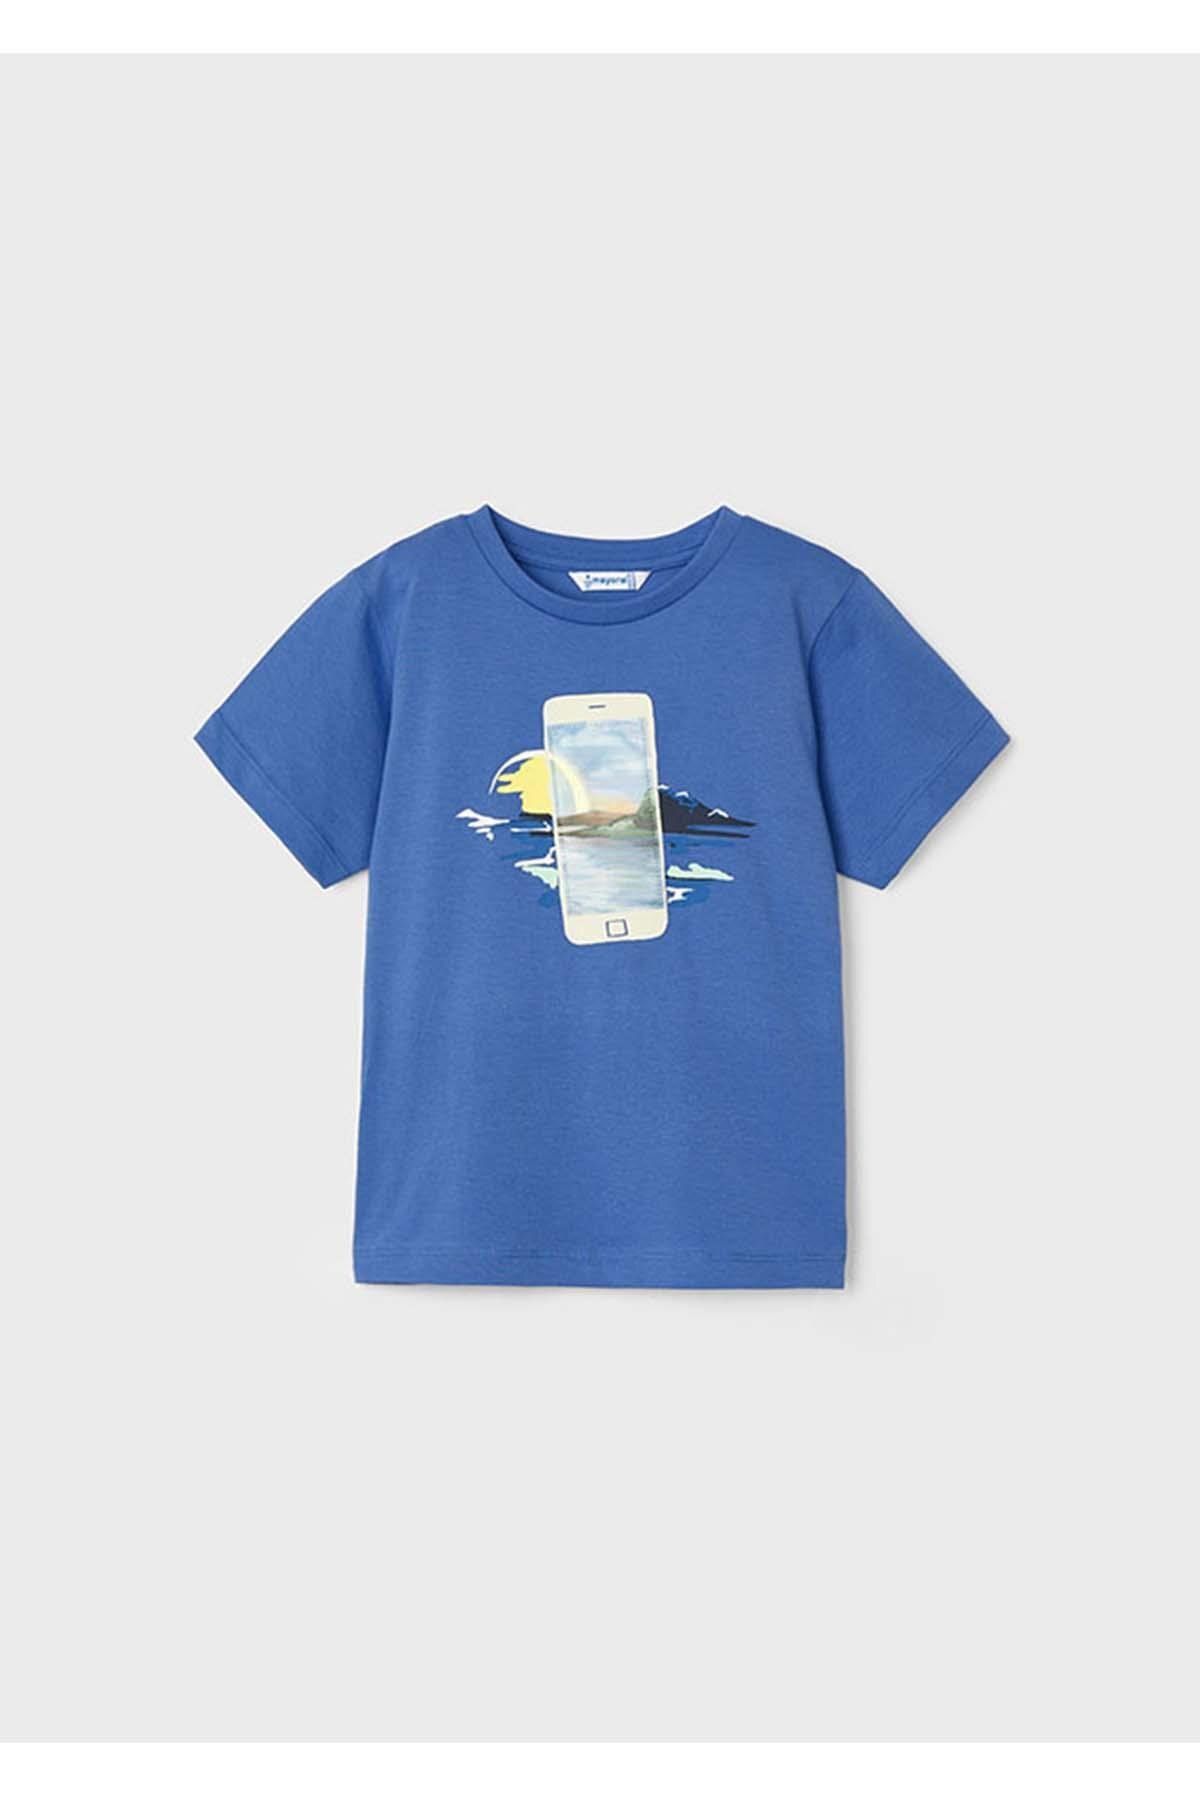 Mayoral Yazlık Erkek Kısa Kol T-shirt - Mavi